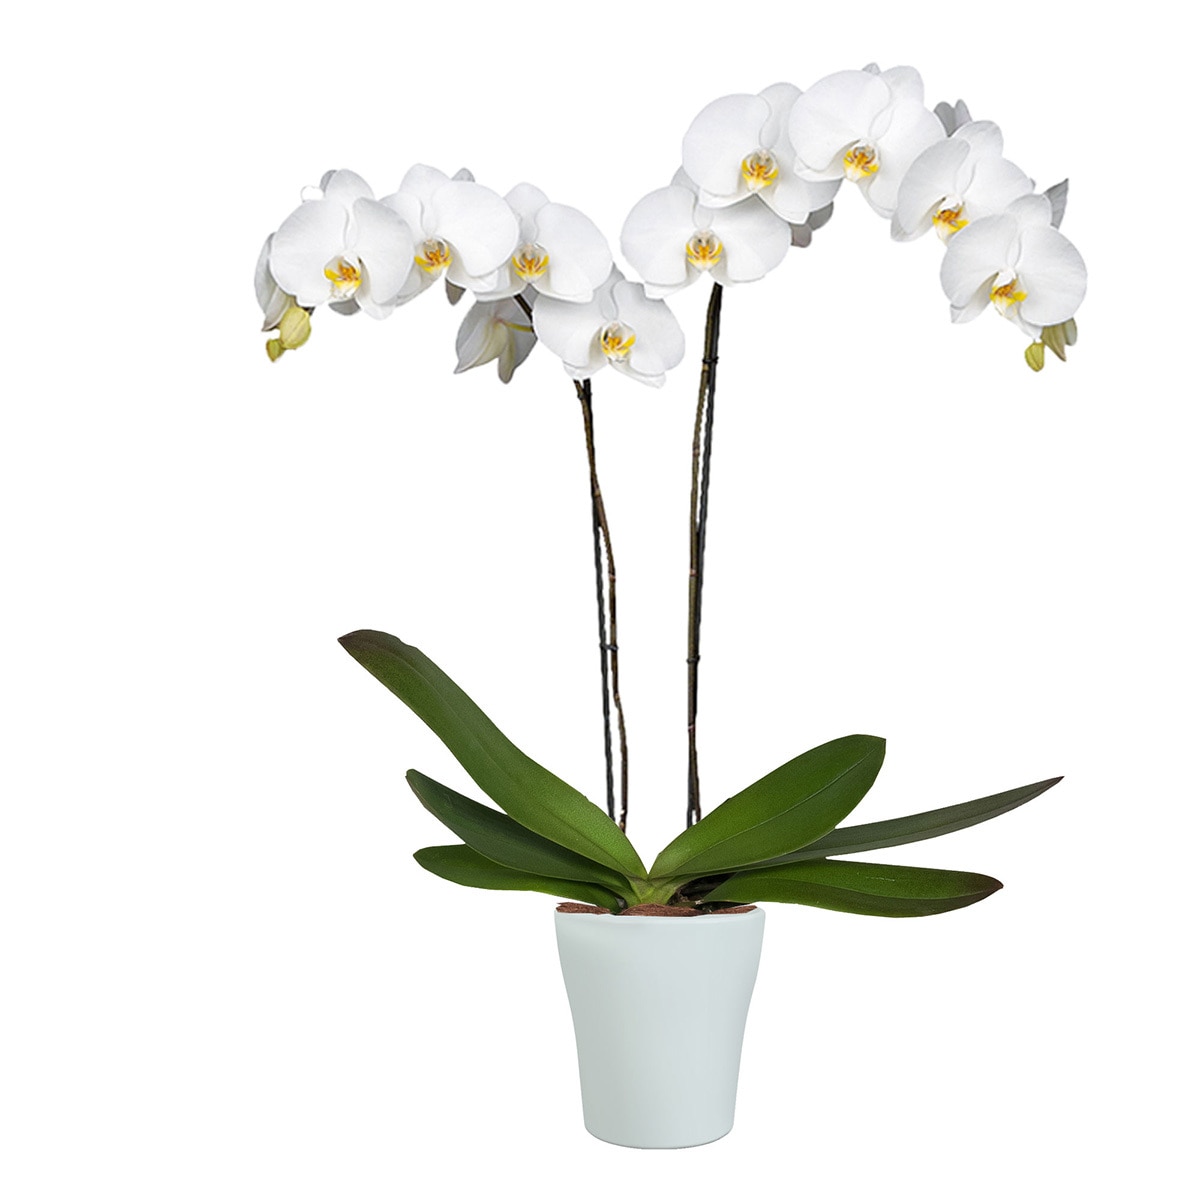 Details 100 picture orquídeas blancas precio